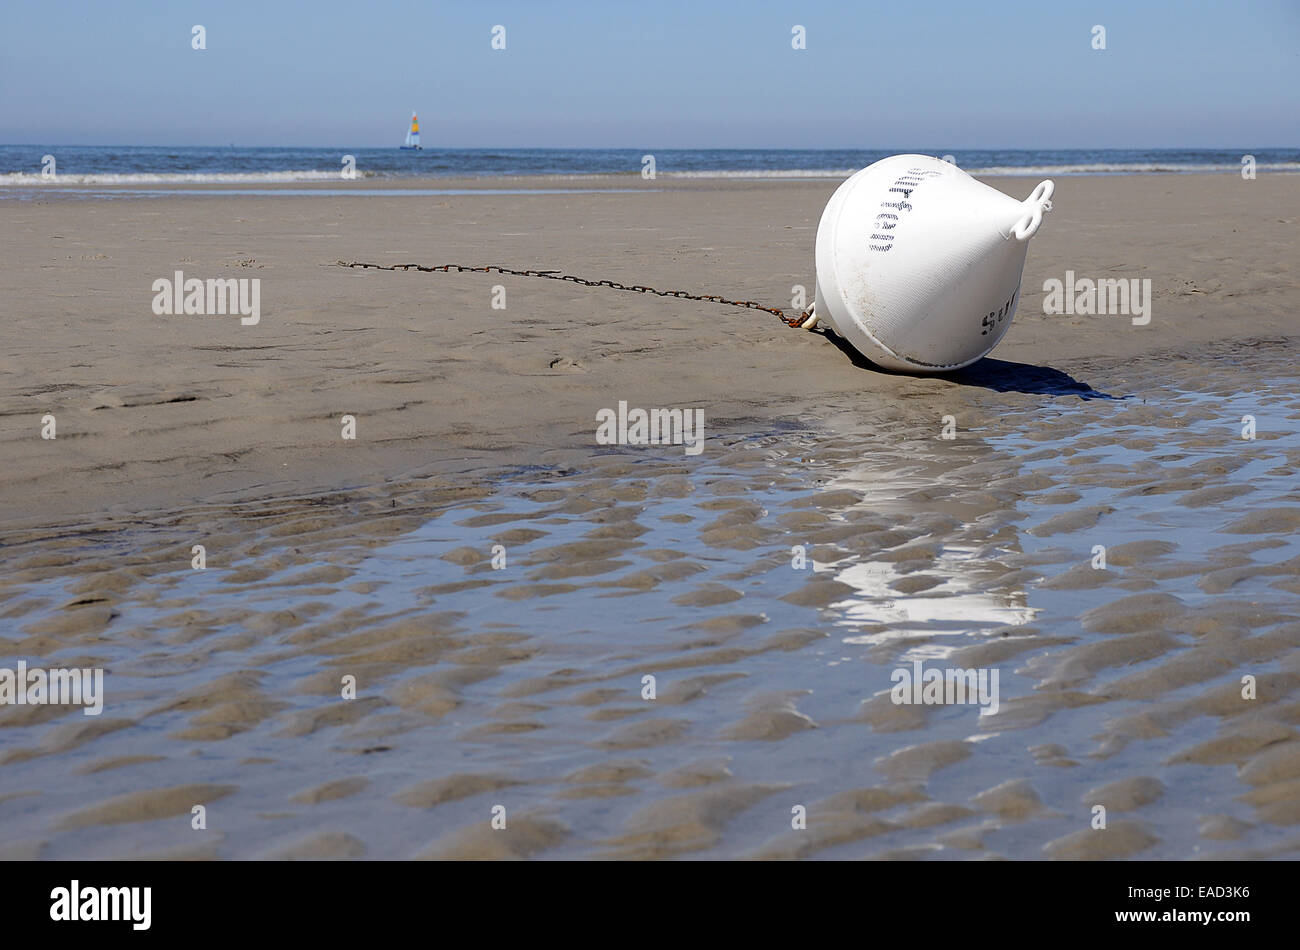 La boa contrassegnata 'Surfen' giacente sulla spiaggia, San Peter-Ording, Schleswig-Holstein, Germania Foto Stock